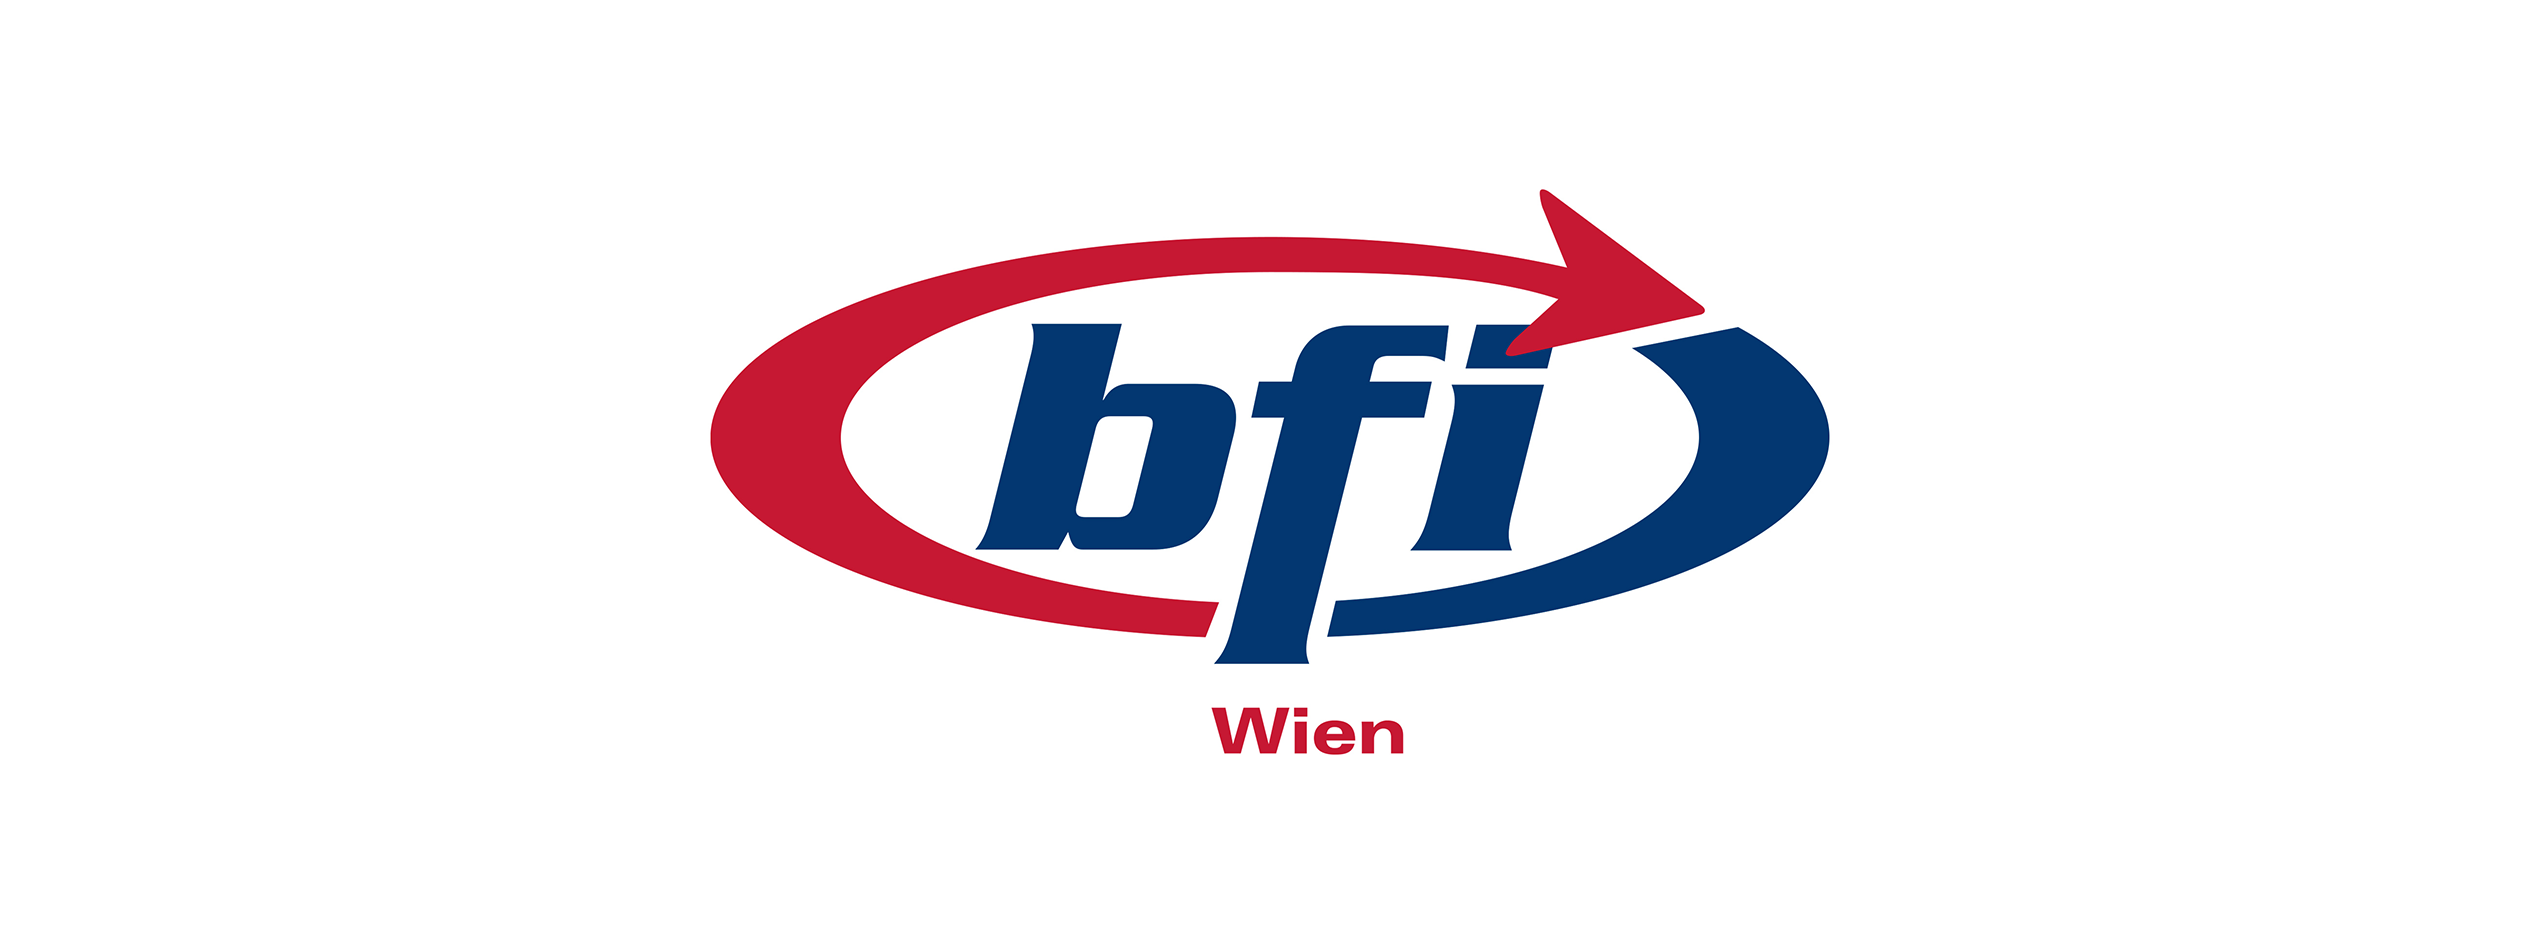 Referenzkunde Bfi Wien